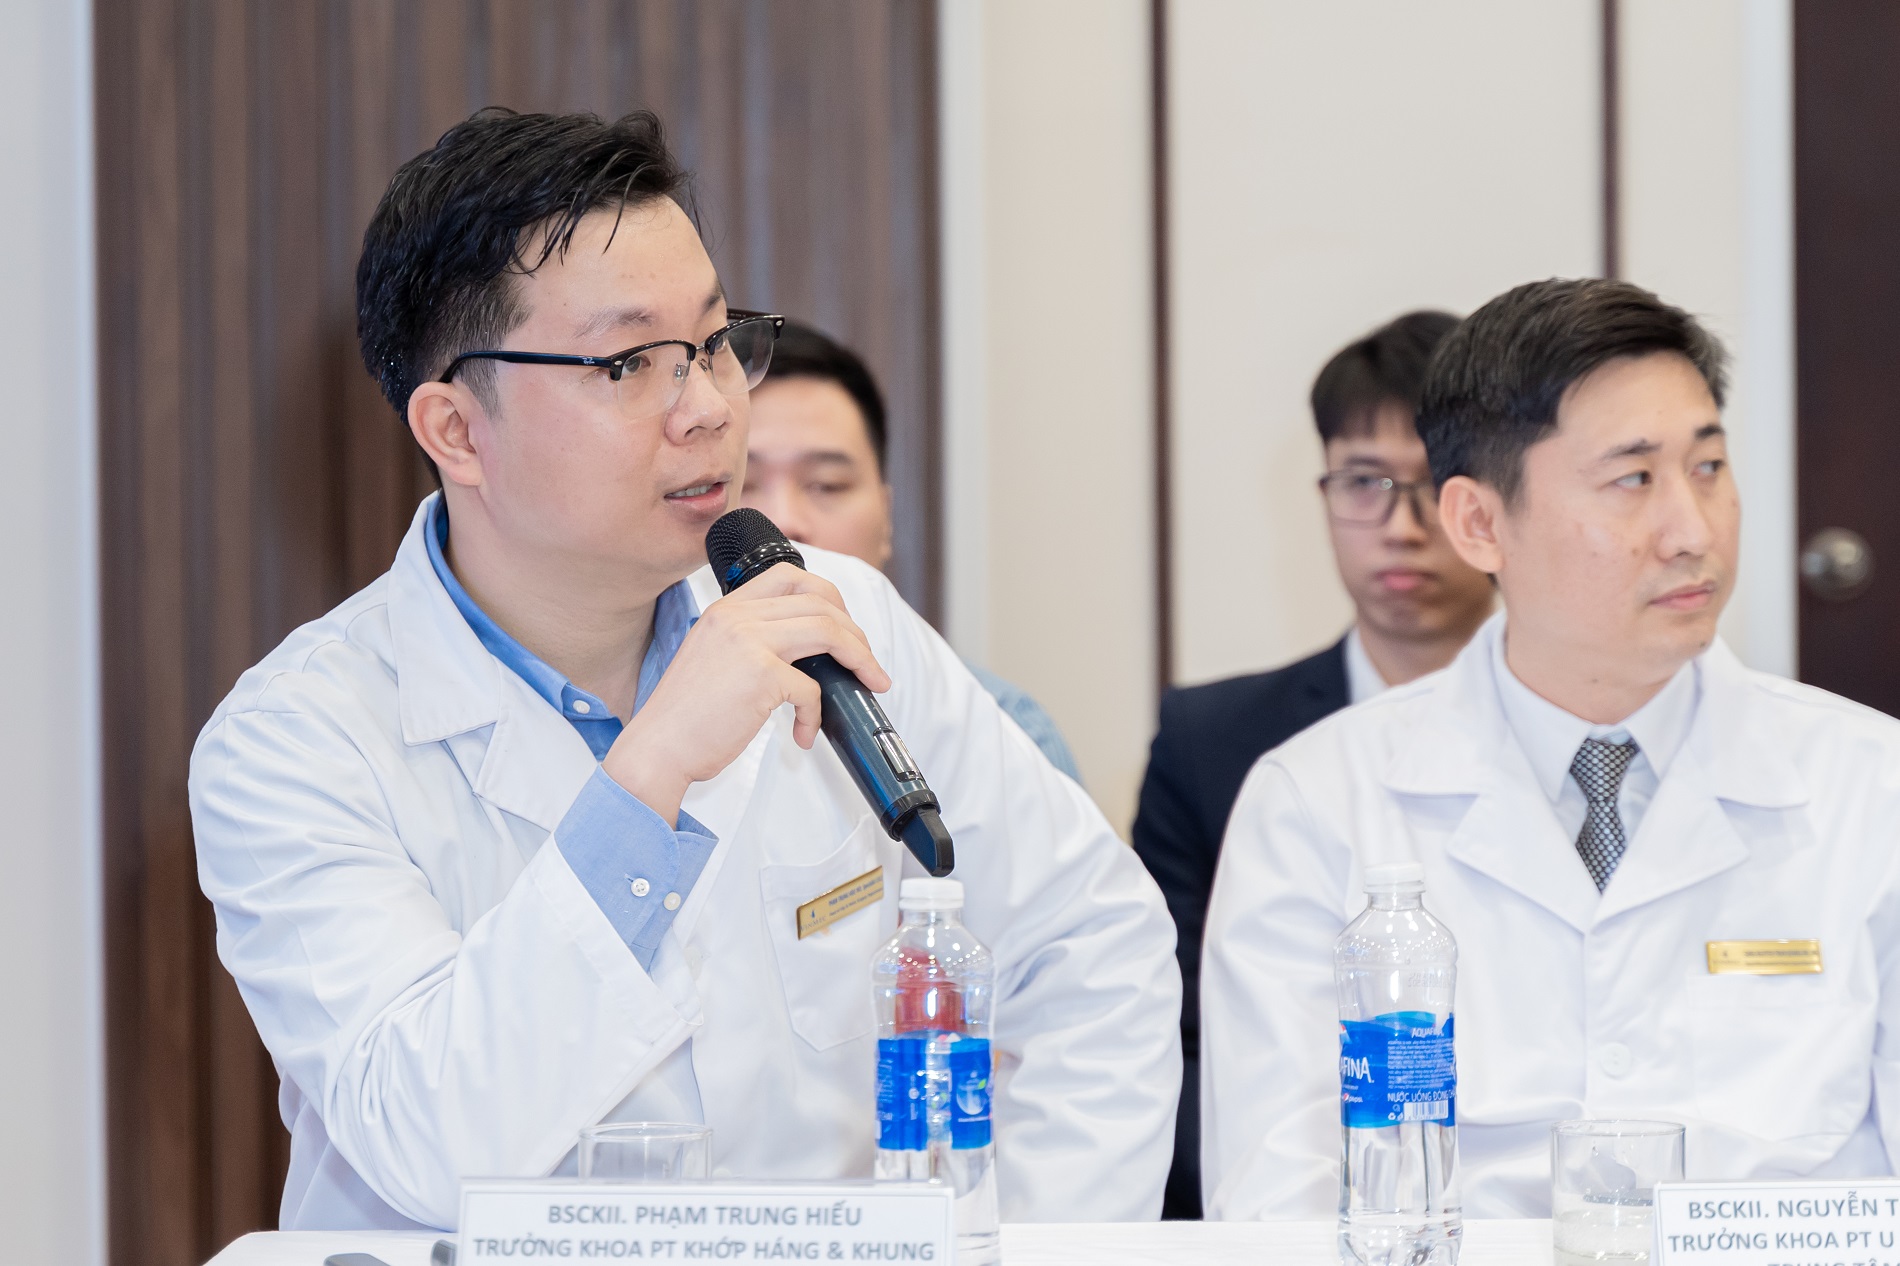 ThS.BS.CKII Phạm Trung Hiếu chia sẻ về những bước tiến mới nhất của công nghệ 3D trong y học được áp dụng cho ca bệnh u xương phức tạp - Ảnh: Vinmec